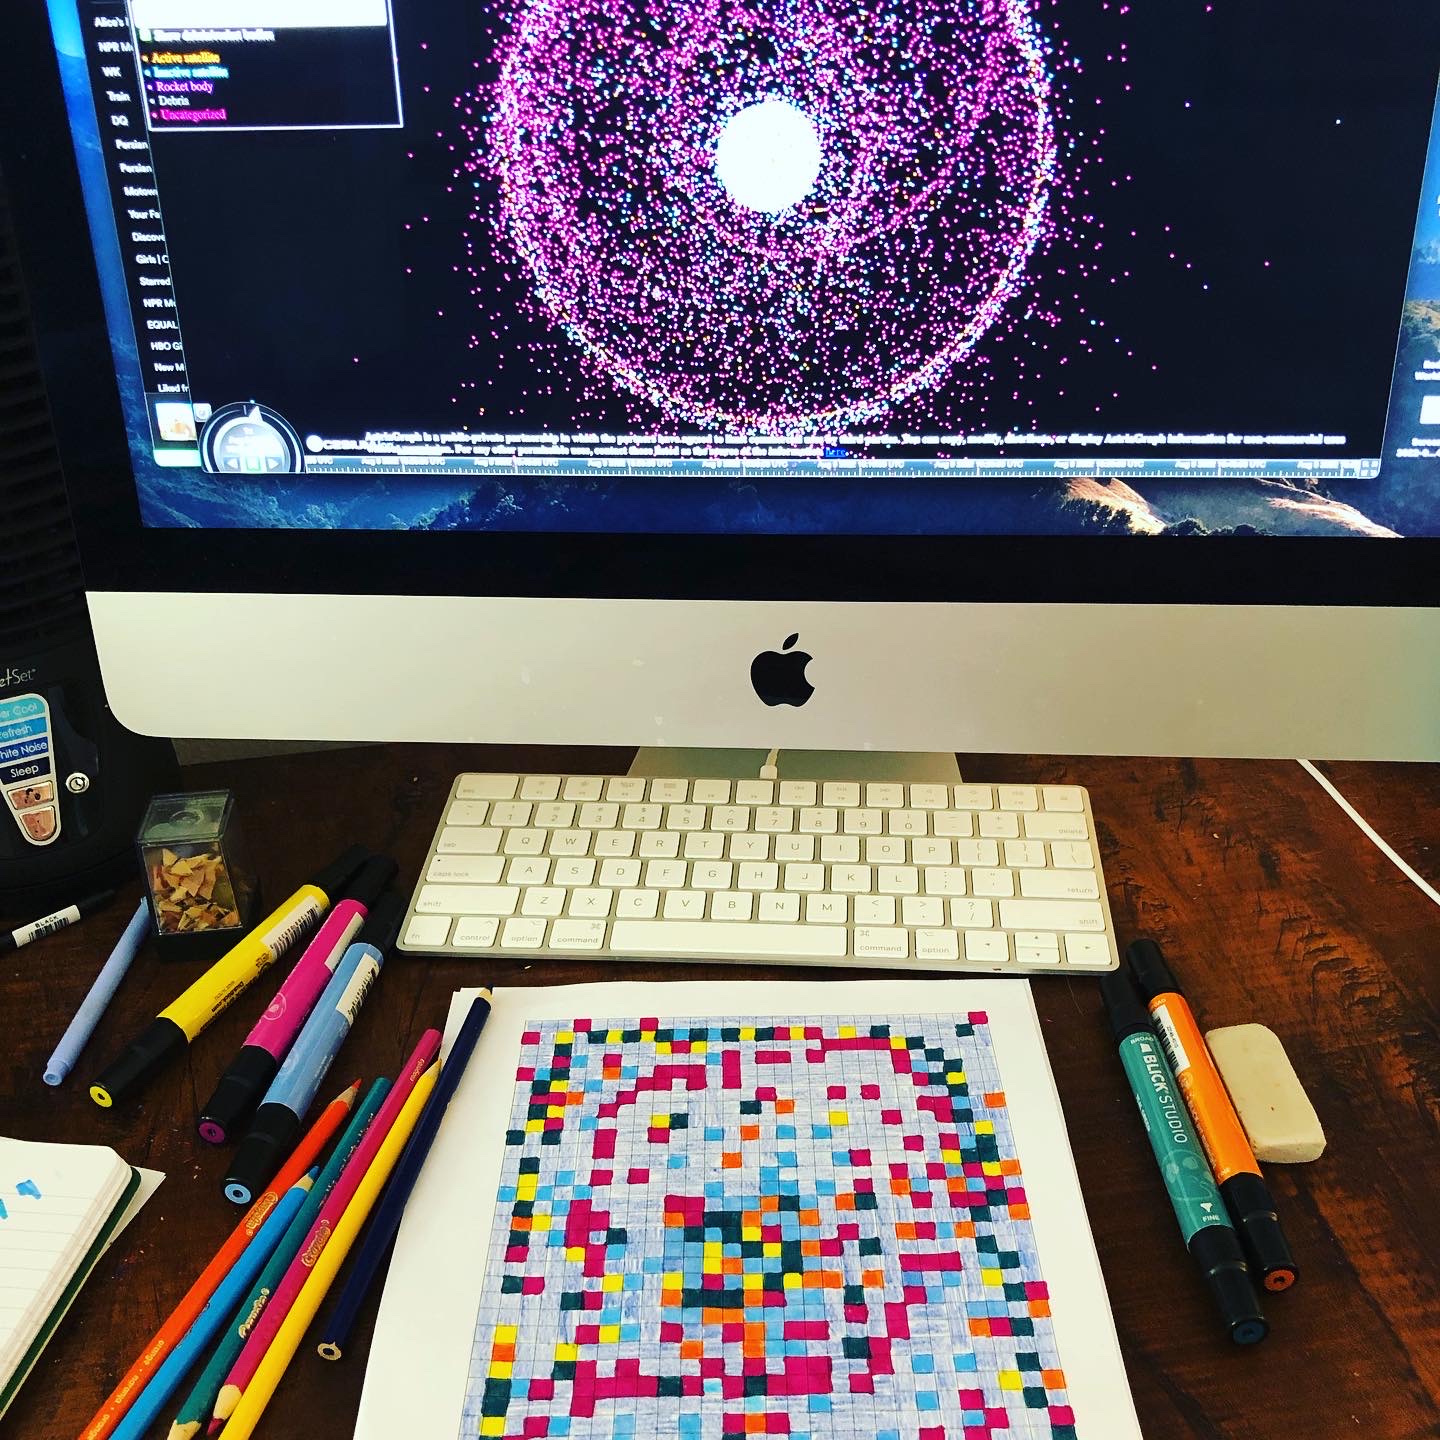 Un trozo de papel cuadriculado rellenado con diferentes colores brillantes se muestra junto a una pantalla de ordenador que muestra una representación de la basura espacial en forma de pequeños puntos en un círculo.